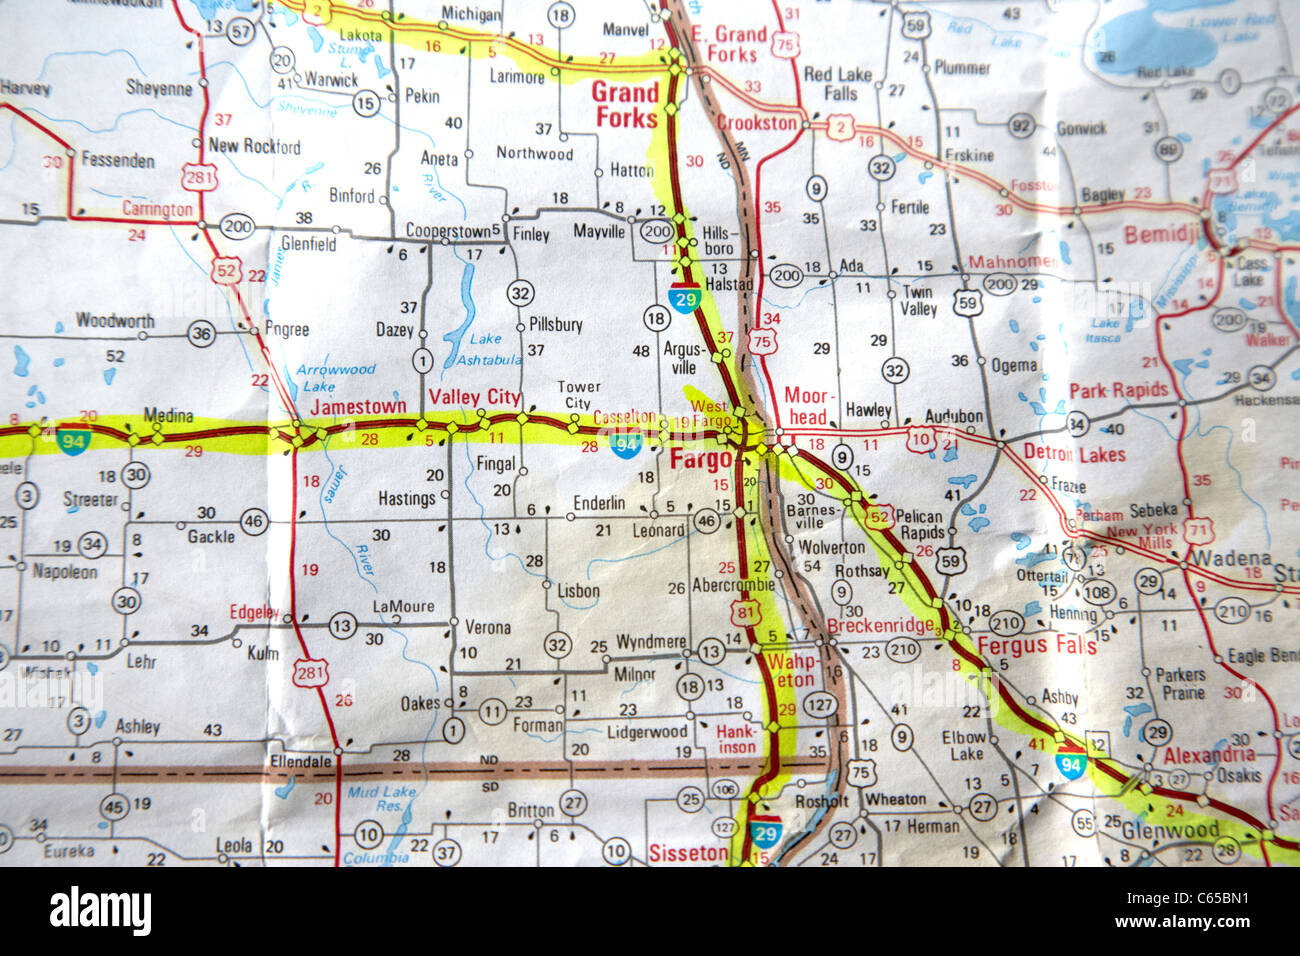 Mapa de carreteras de Estados Unidos con recorridos planificados en Fargo, North Dakota resaltador a través de EE.UU. Foto de stock